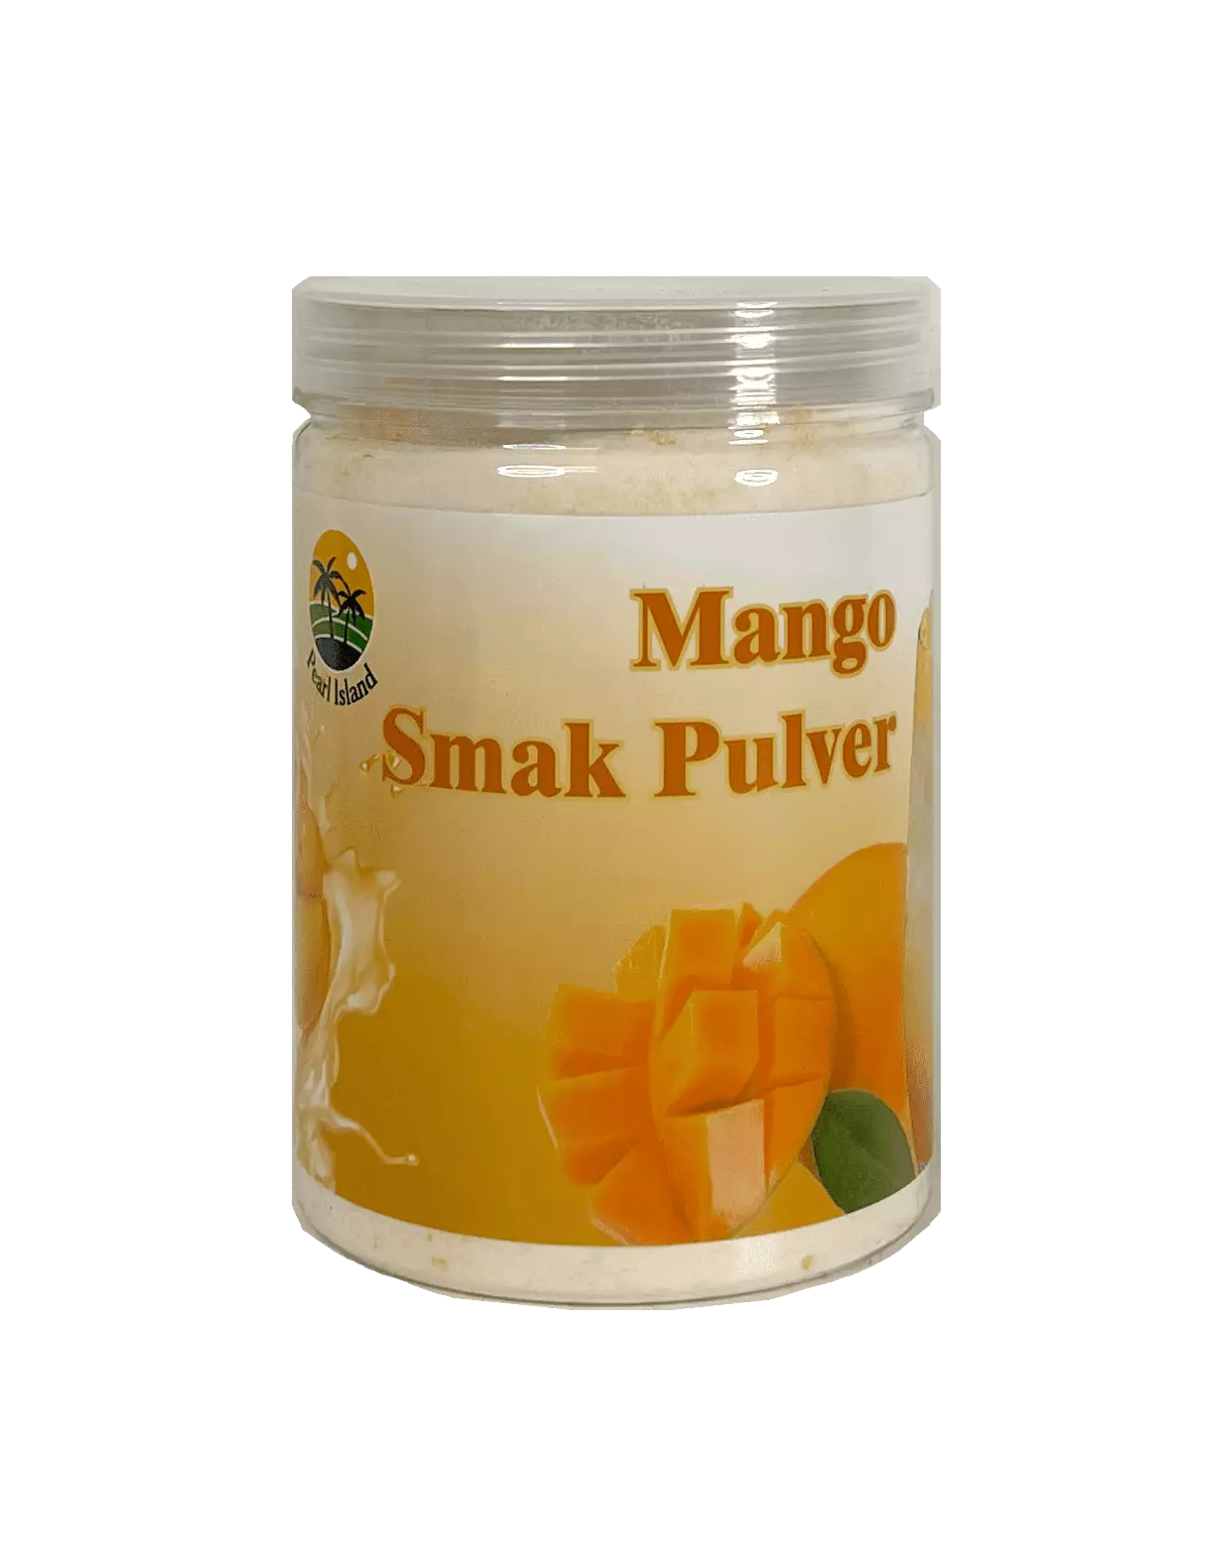 Saft Pulver Mango Smak 450g Kina